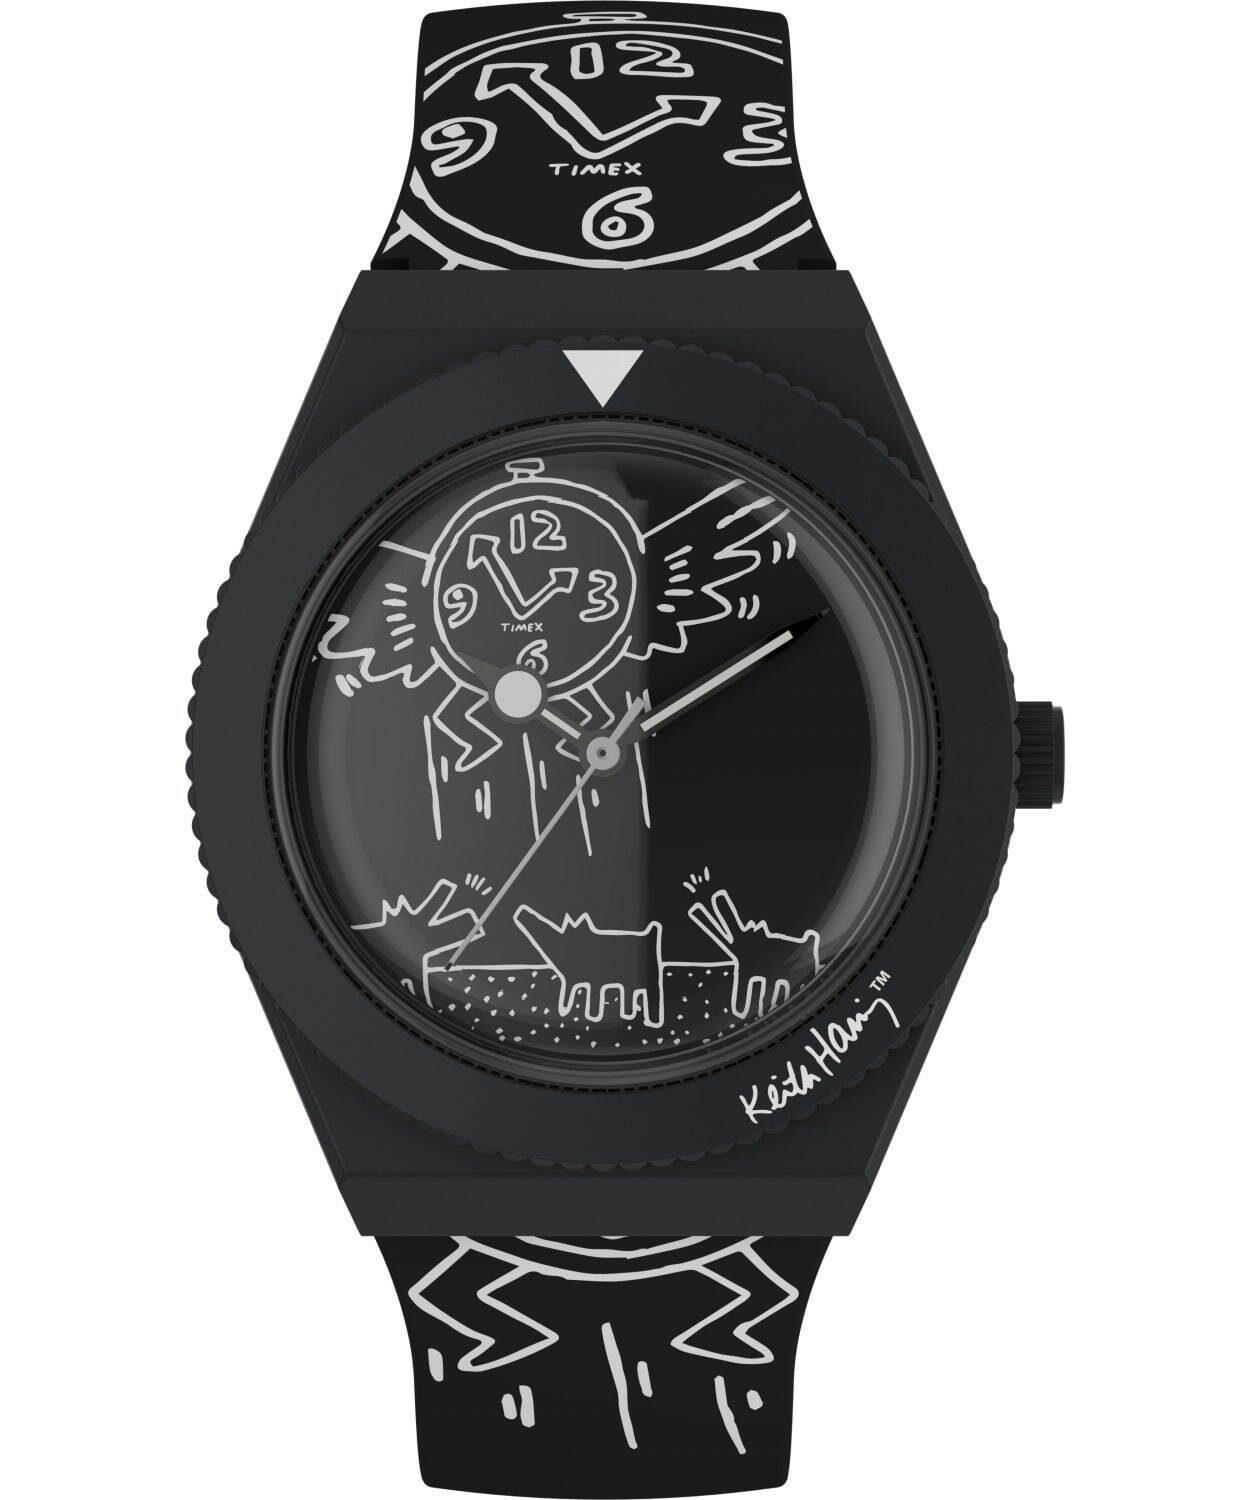 タイメックス×キース・ヘリングのコラボ腕時計、時計全体に